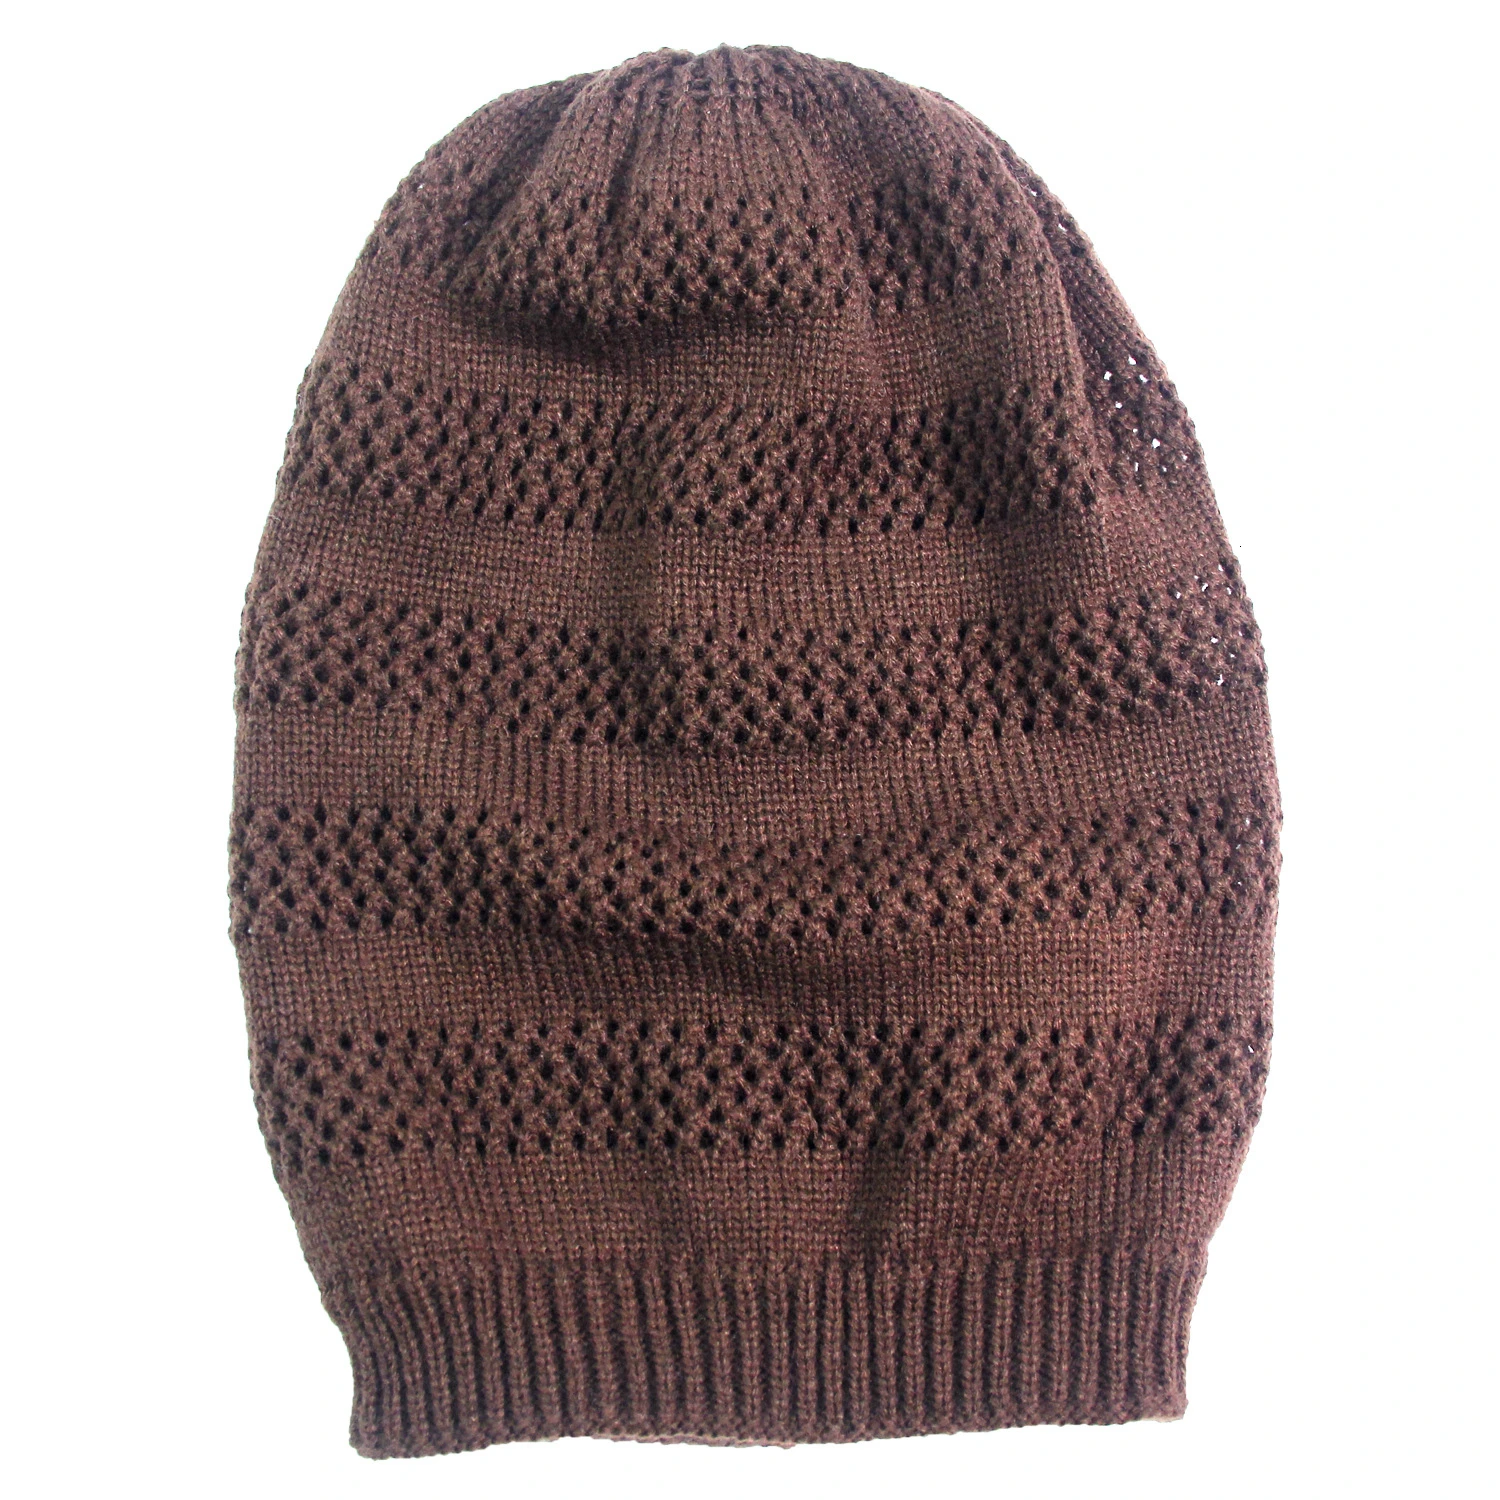 Женская мягкая хлопковая шапочка с отворотами Шапка Вязаная Мягкая уютная негабаритная длинная шапка для женщин и мужчин - Цвет: Coffee 1